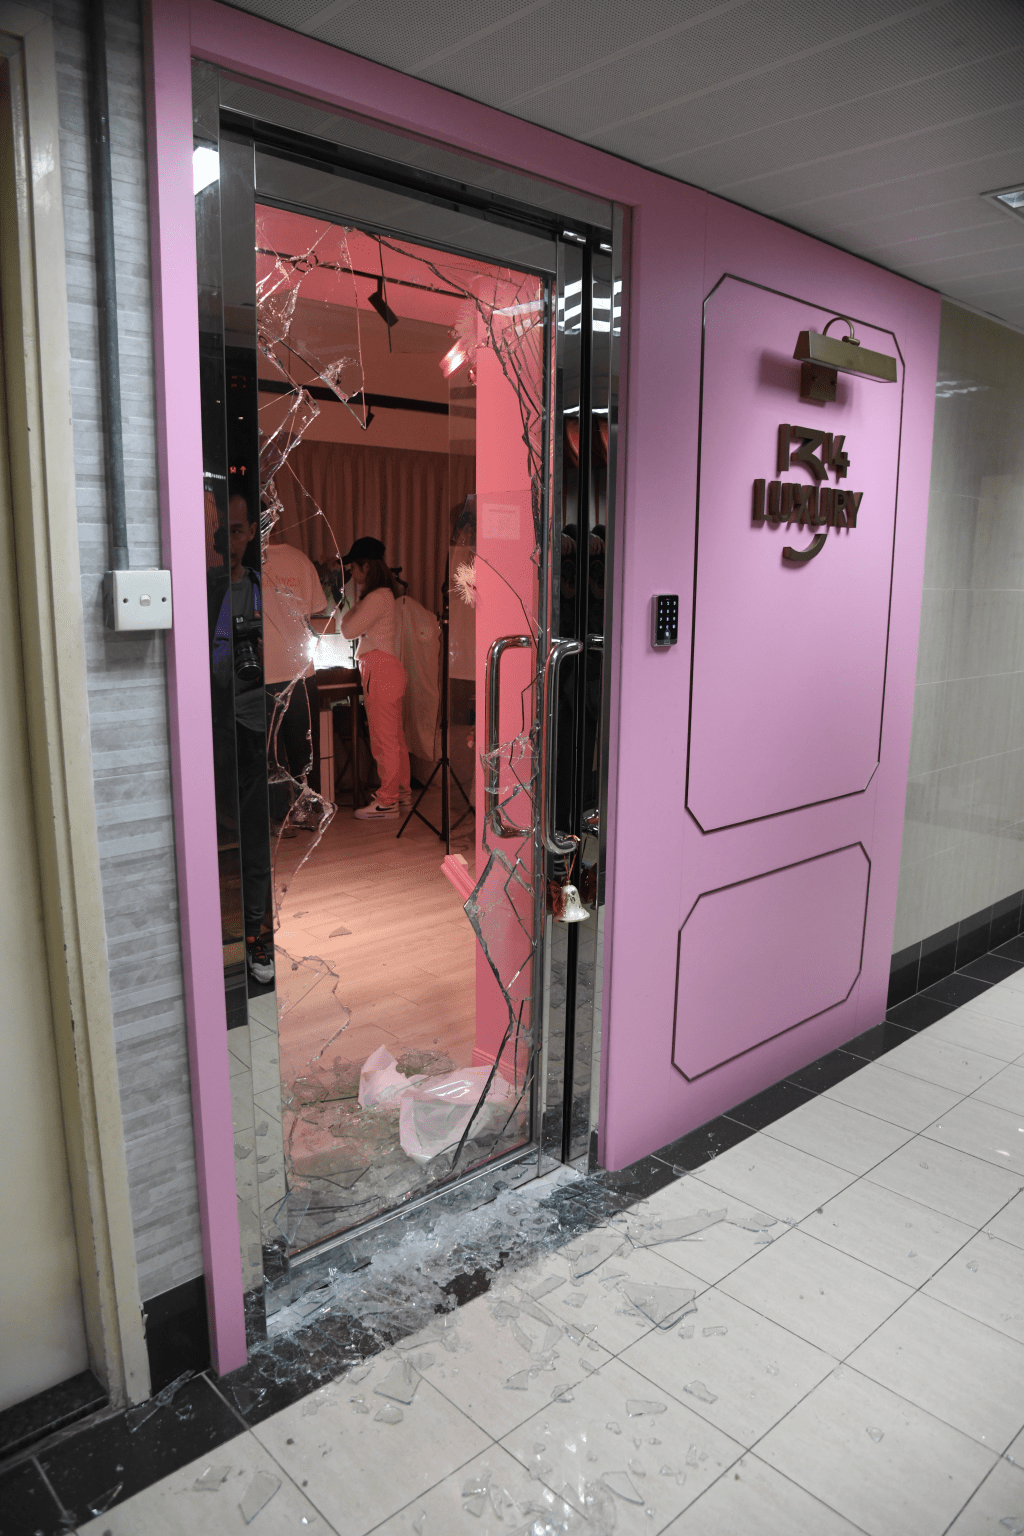 北京道57号国都大厦8楼一间二手名牌袋楼上铺的玻璃大门被人破坏。